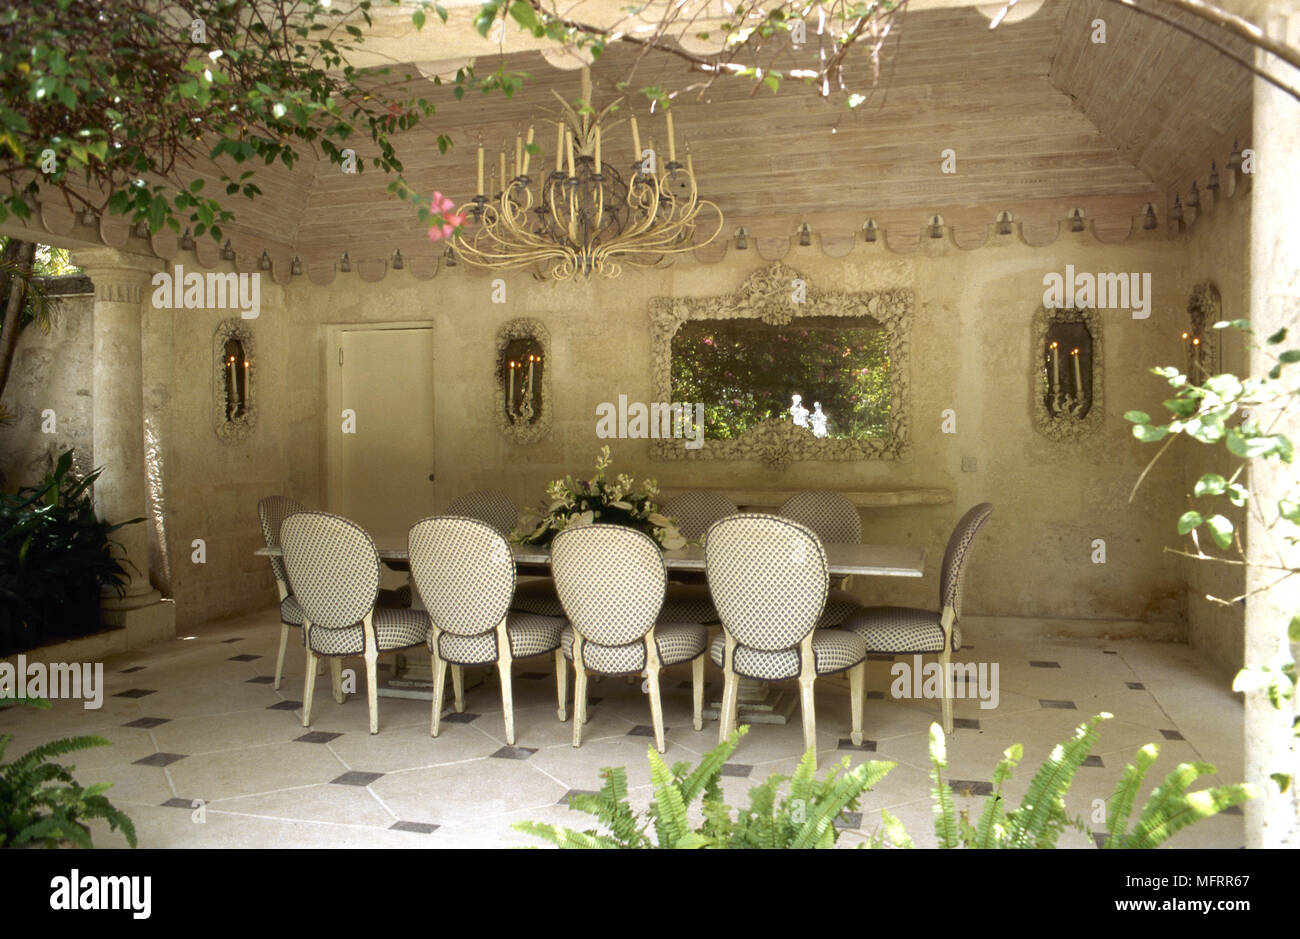 Überdachte Terrasse Essbereich mit steinernen Wänden, gefliestem Fußboden,  Esstisch mit gepolsterten Stühlen und eine Kerze Kronleuchter  Stockfotografie - Alamy